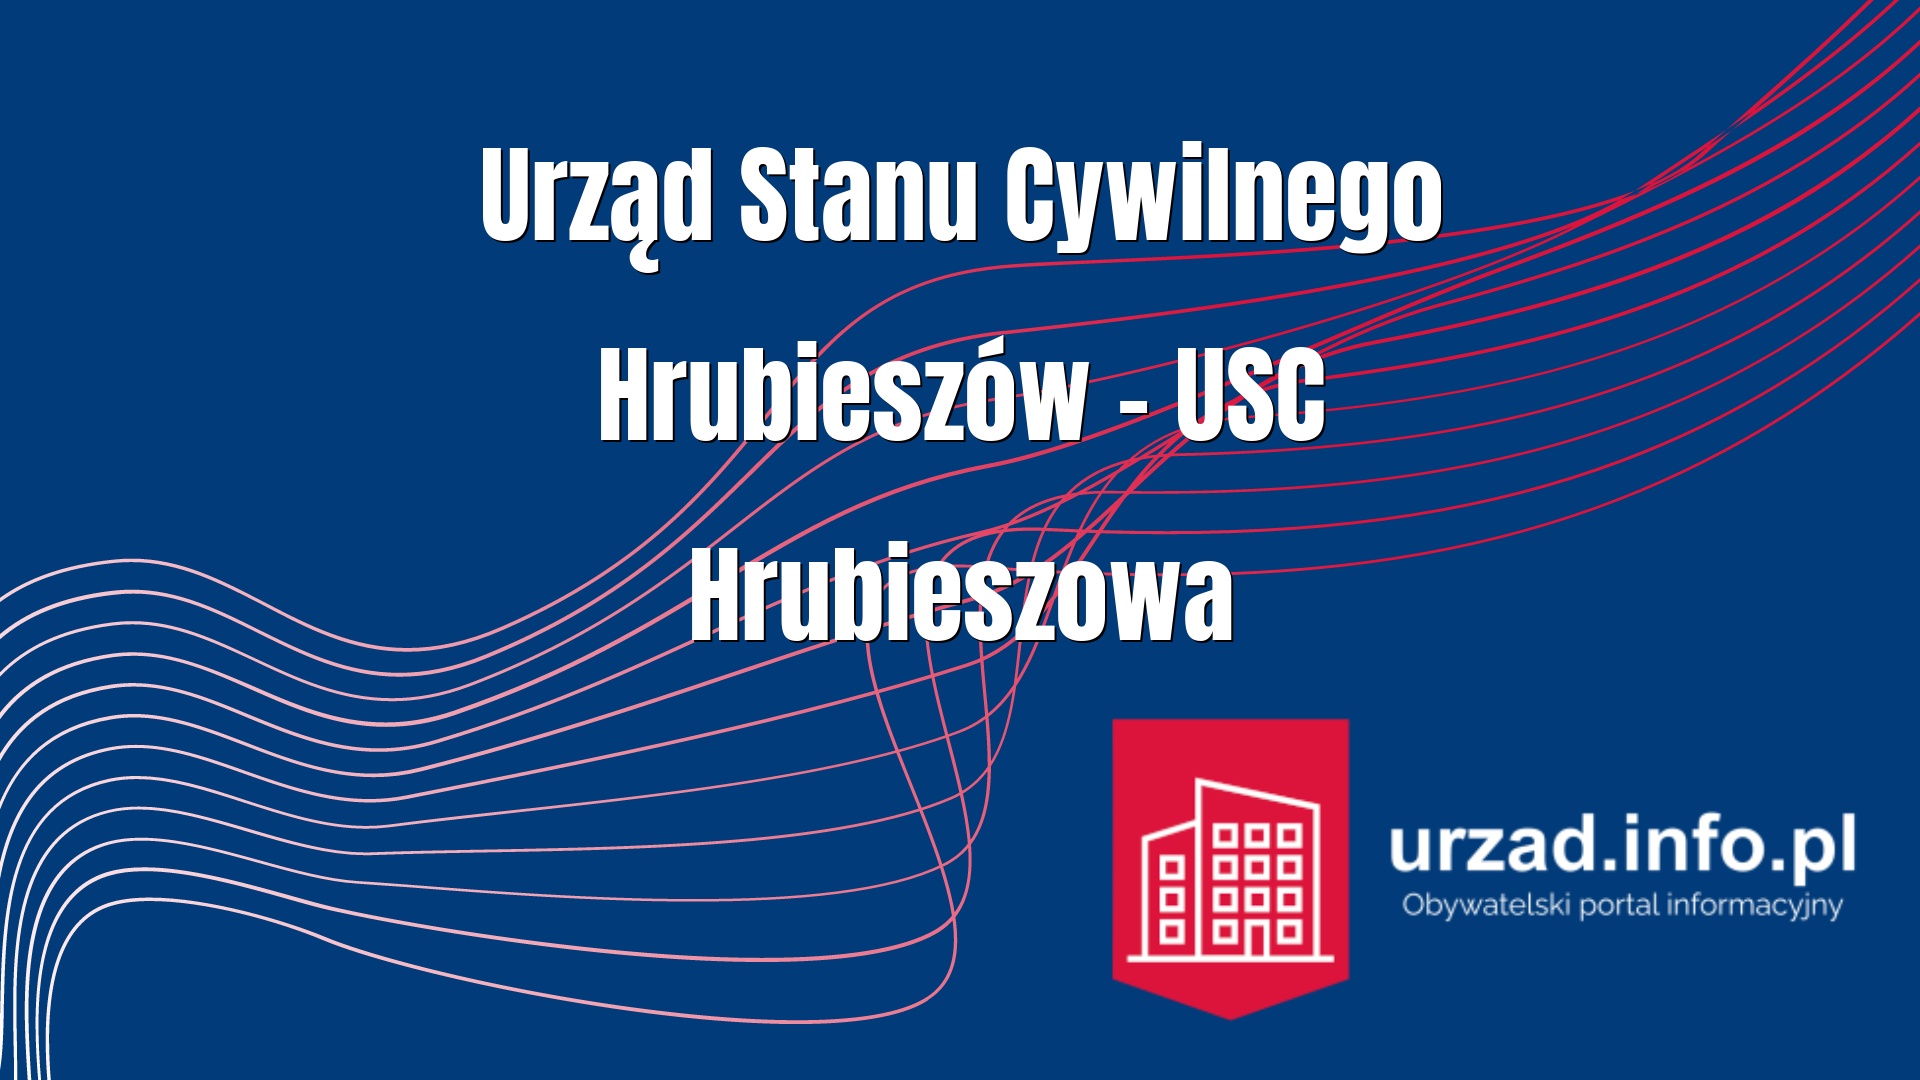 Urząd Stanu Cywilnego Hrubieszów – USC Hrubieszowa